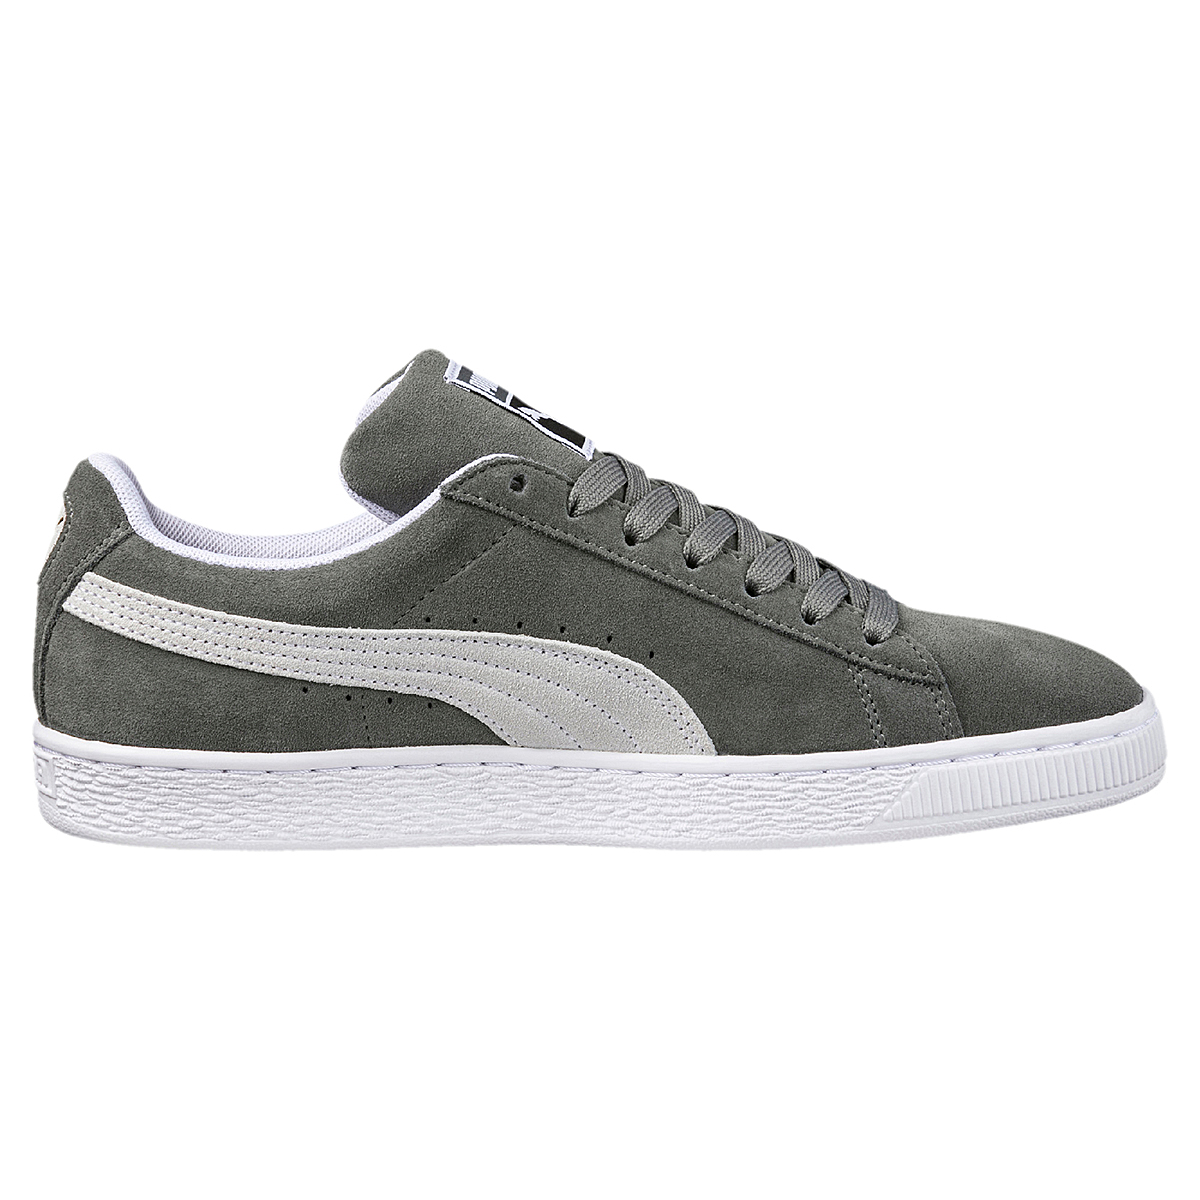 Puma Suede Classic Unisex Sneaker Low-Top grau 365347 05